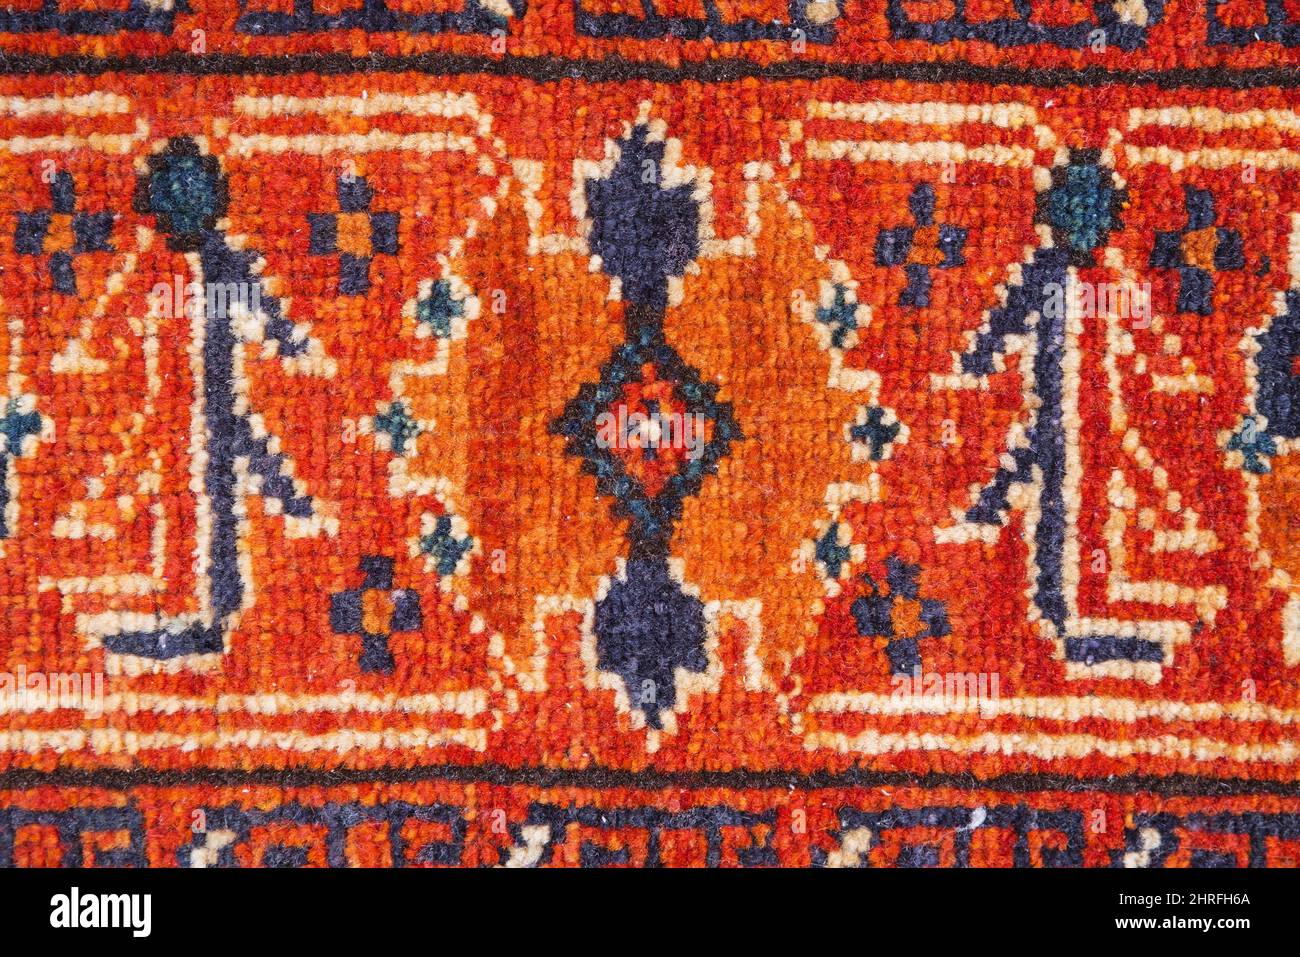 Imagen de fondo con detalle de alfombra oriental roja naranja y azul Foto de stock